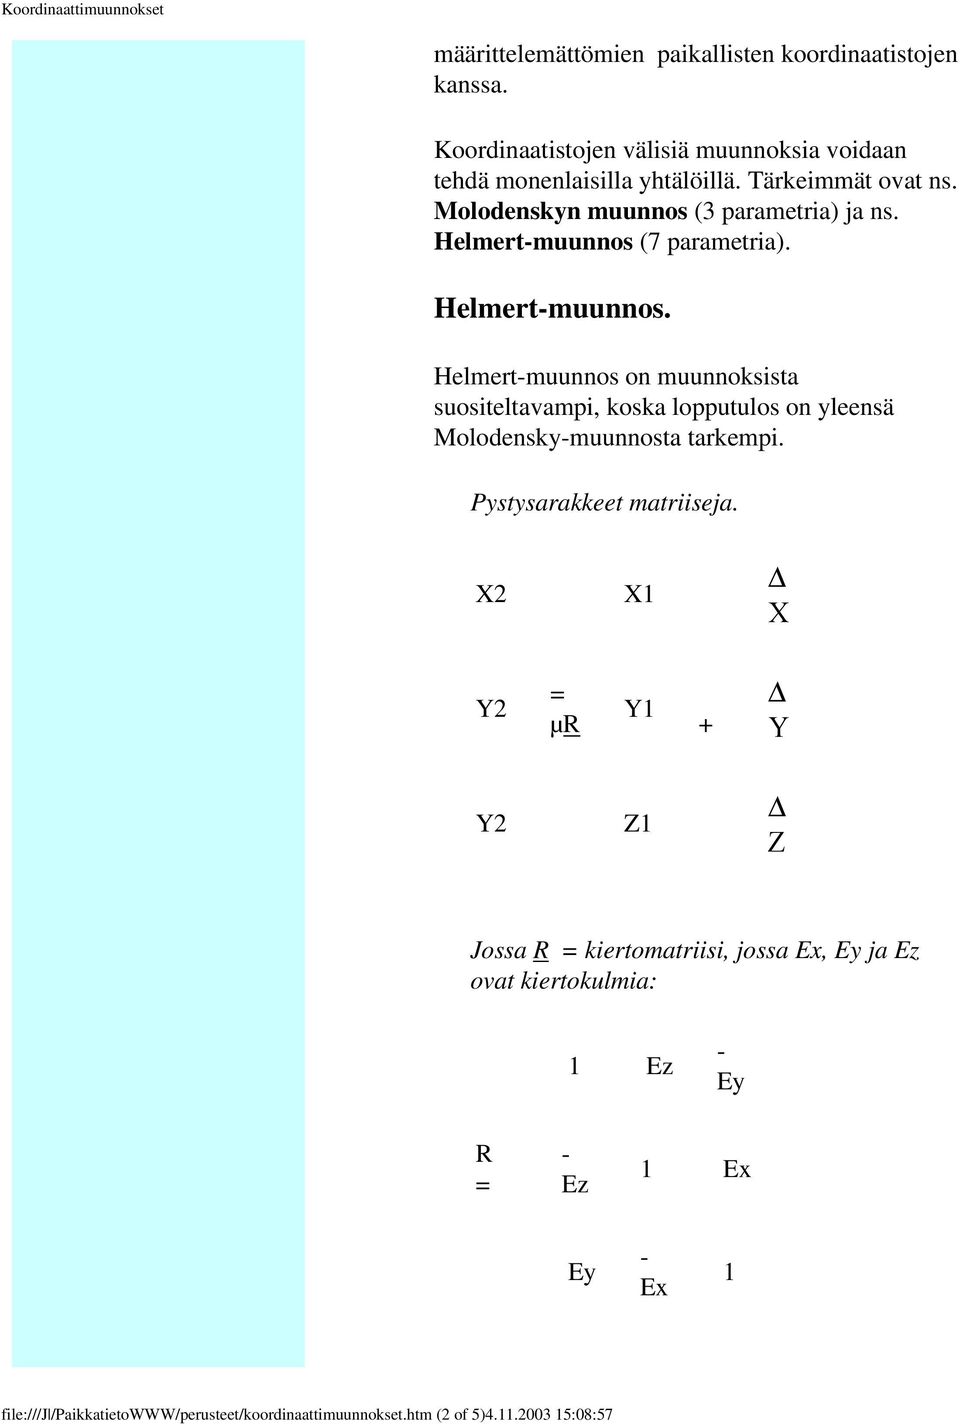 Helmert-muunnos (7 parametria). Helmert-muunnos. Helmert-muunnos on muunnoksista suositeltavampi, koska lopputulos on yleensä Molodensky-muunnosta tarkempi.